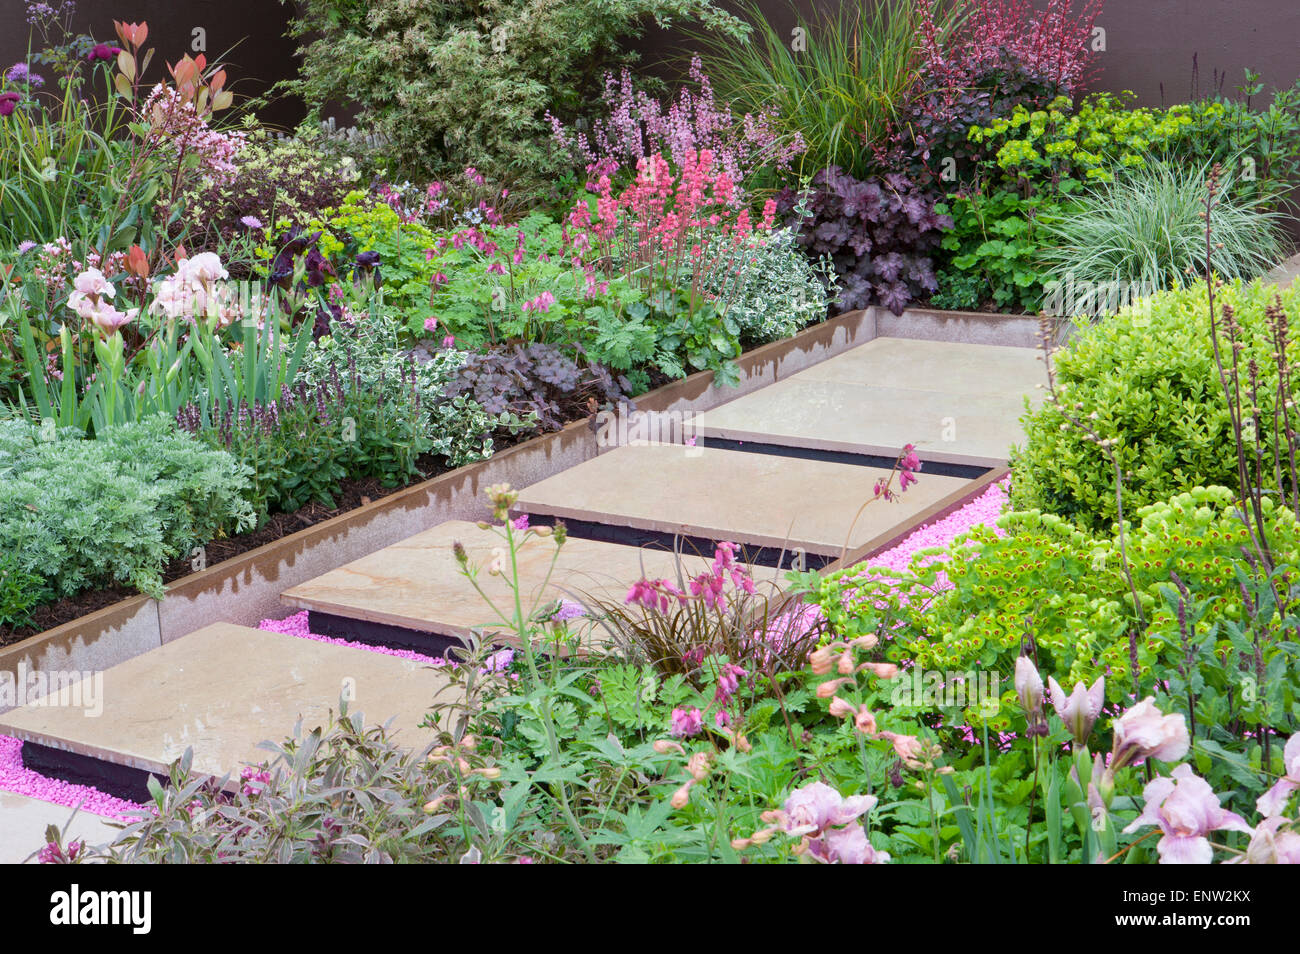 Jardin moderne flottant en pierre pavant sur du gravier rose avec des bordures de fleurs herbacées mixtes - printemps - Angleterre Royaume-Uni - RHS Malvern Spring show Banque D'Images